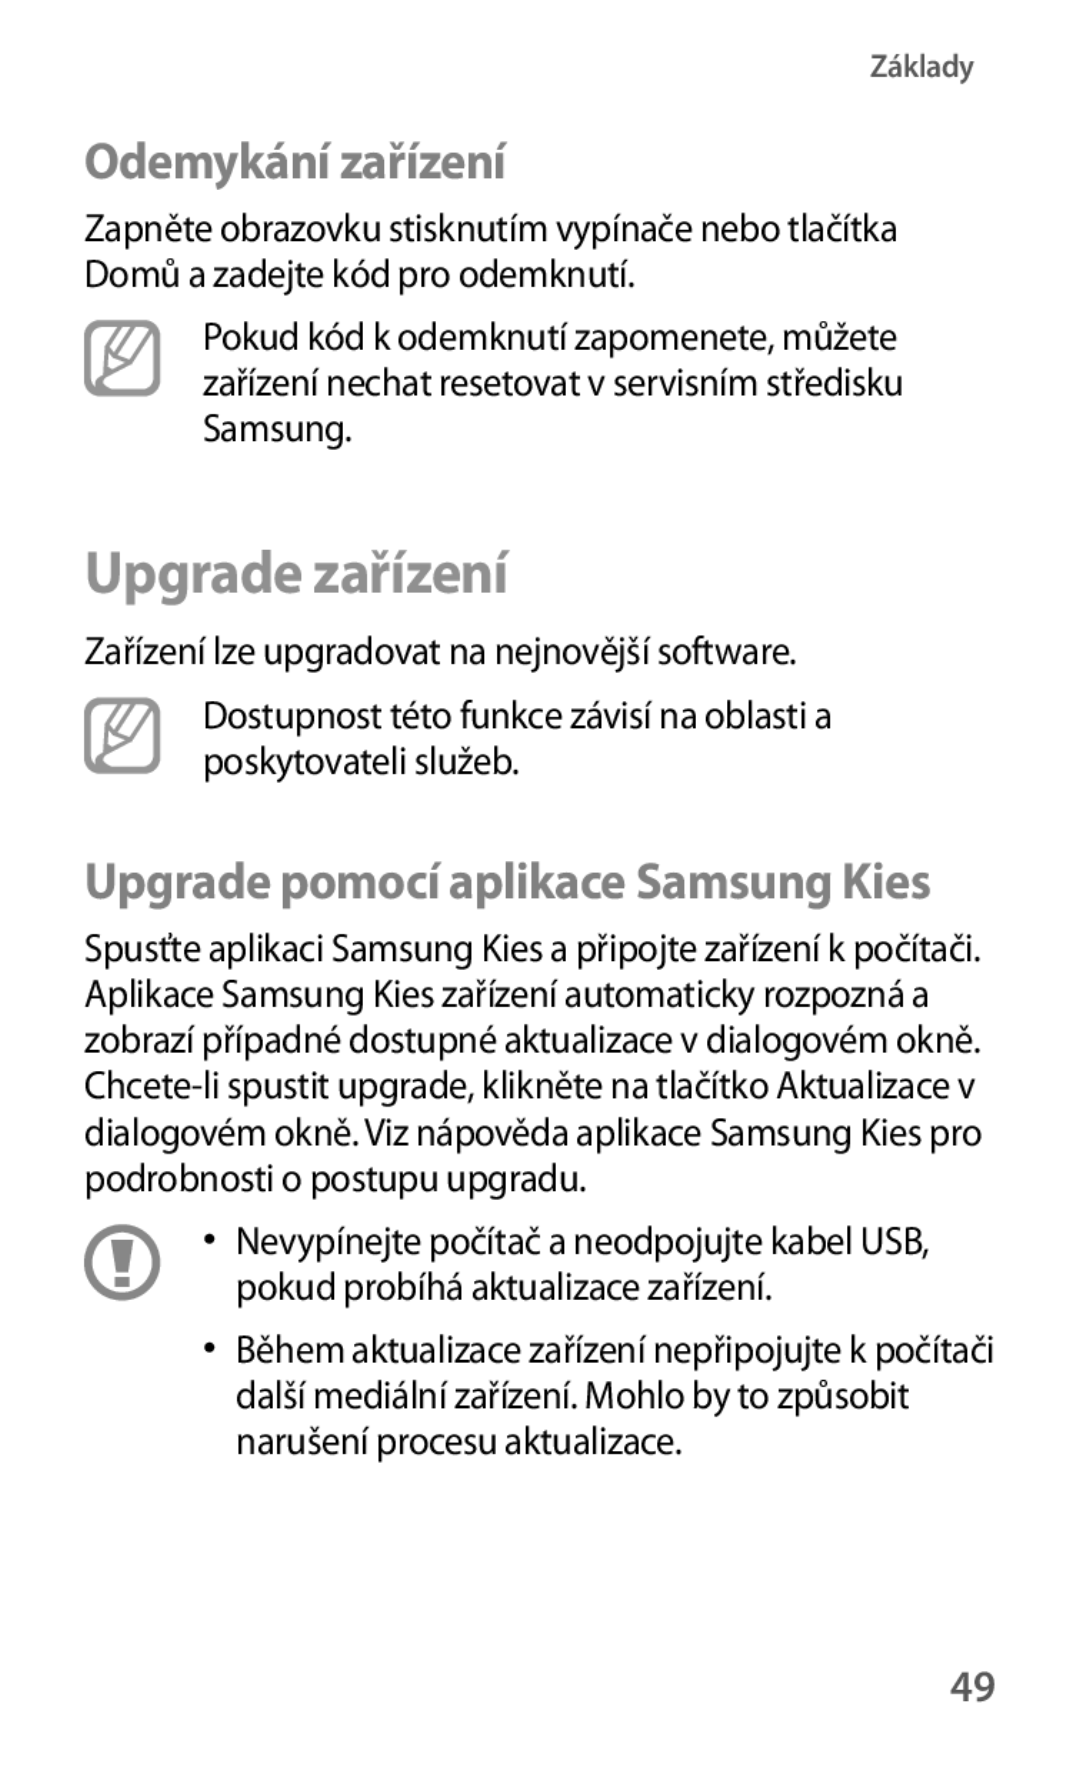 Samsung SM-T530NZWAXEO, SM-T530NZWAATO, SM-T530NYKAATO, SM-T530NYKAEUR, SM-T530NYKAAUT Upgrade zařízení, Odemykání zařízení 